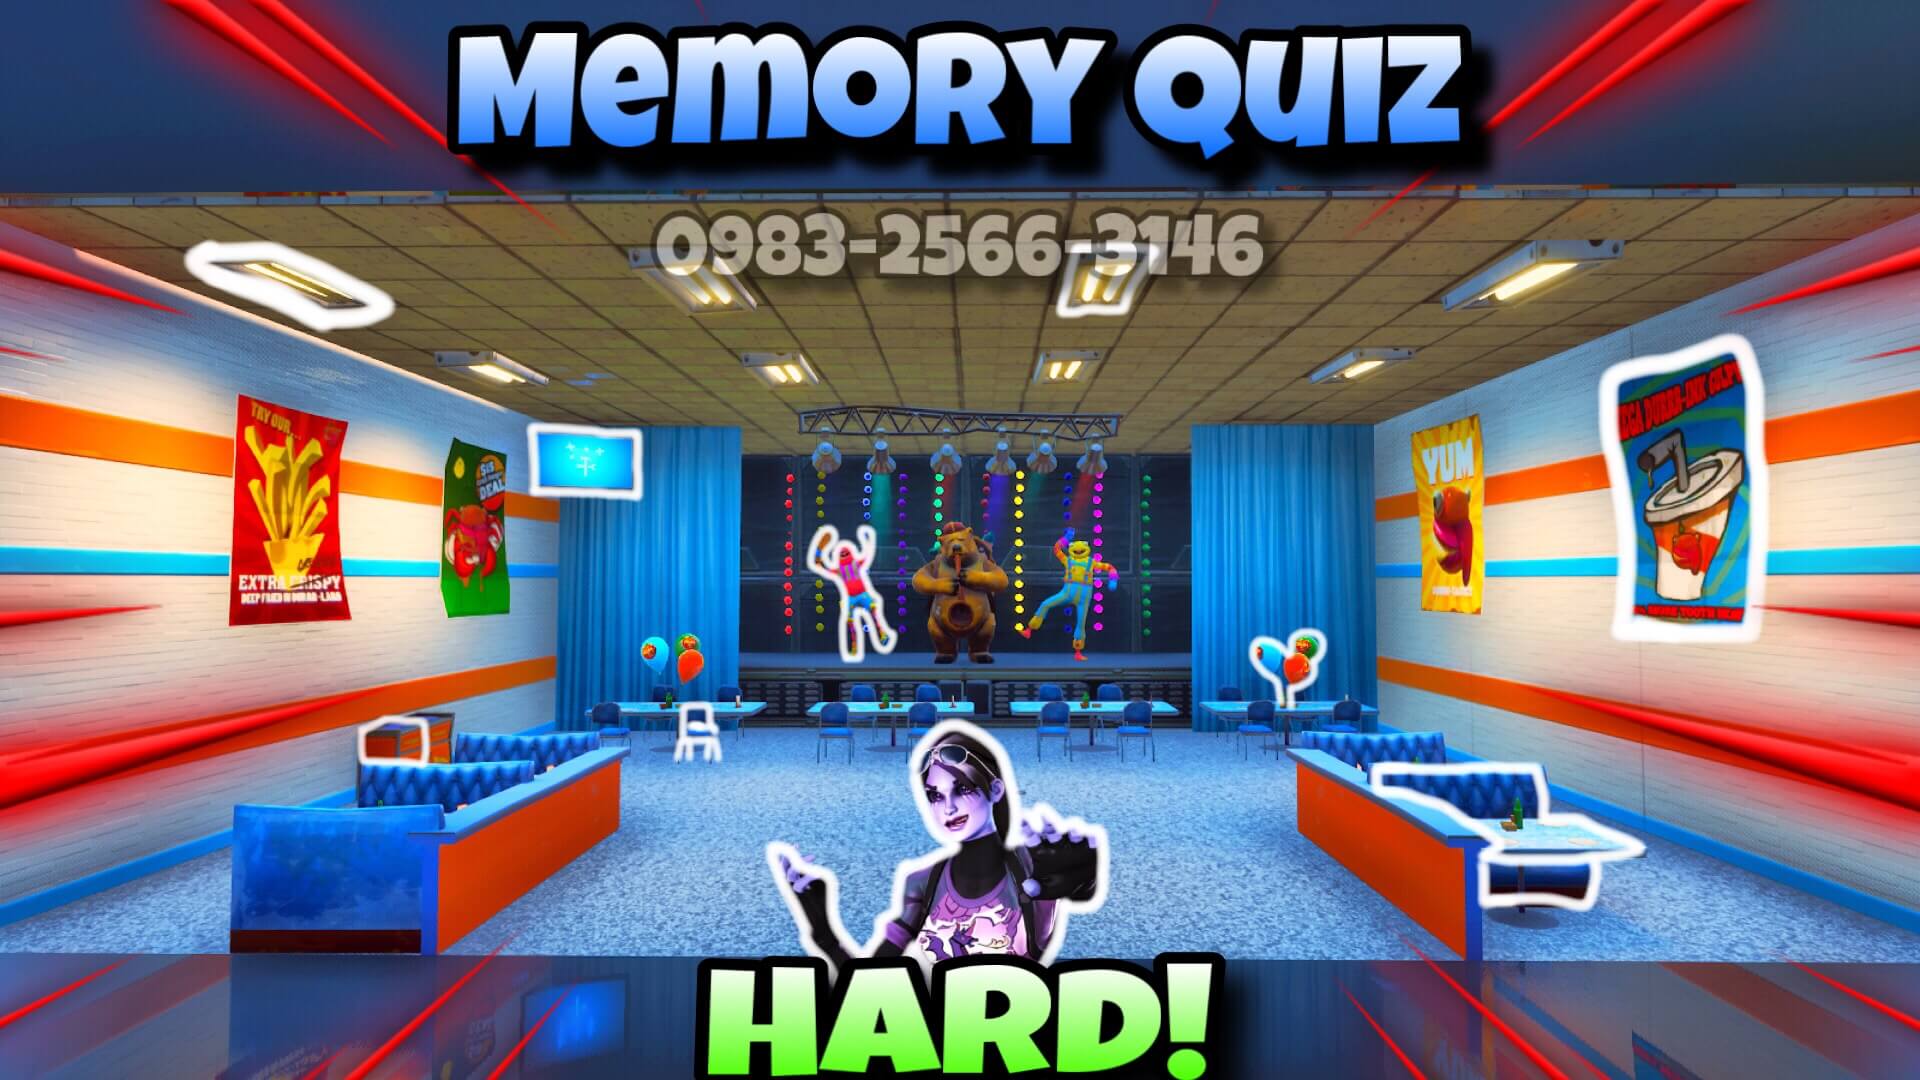 THE VISUAL MEMORY QUIZ (HARD) image 2